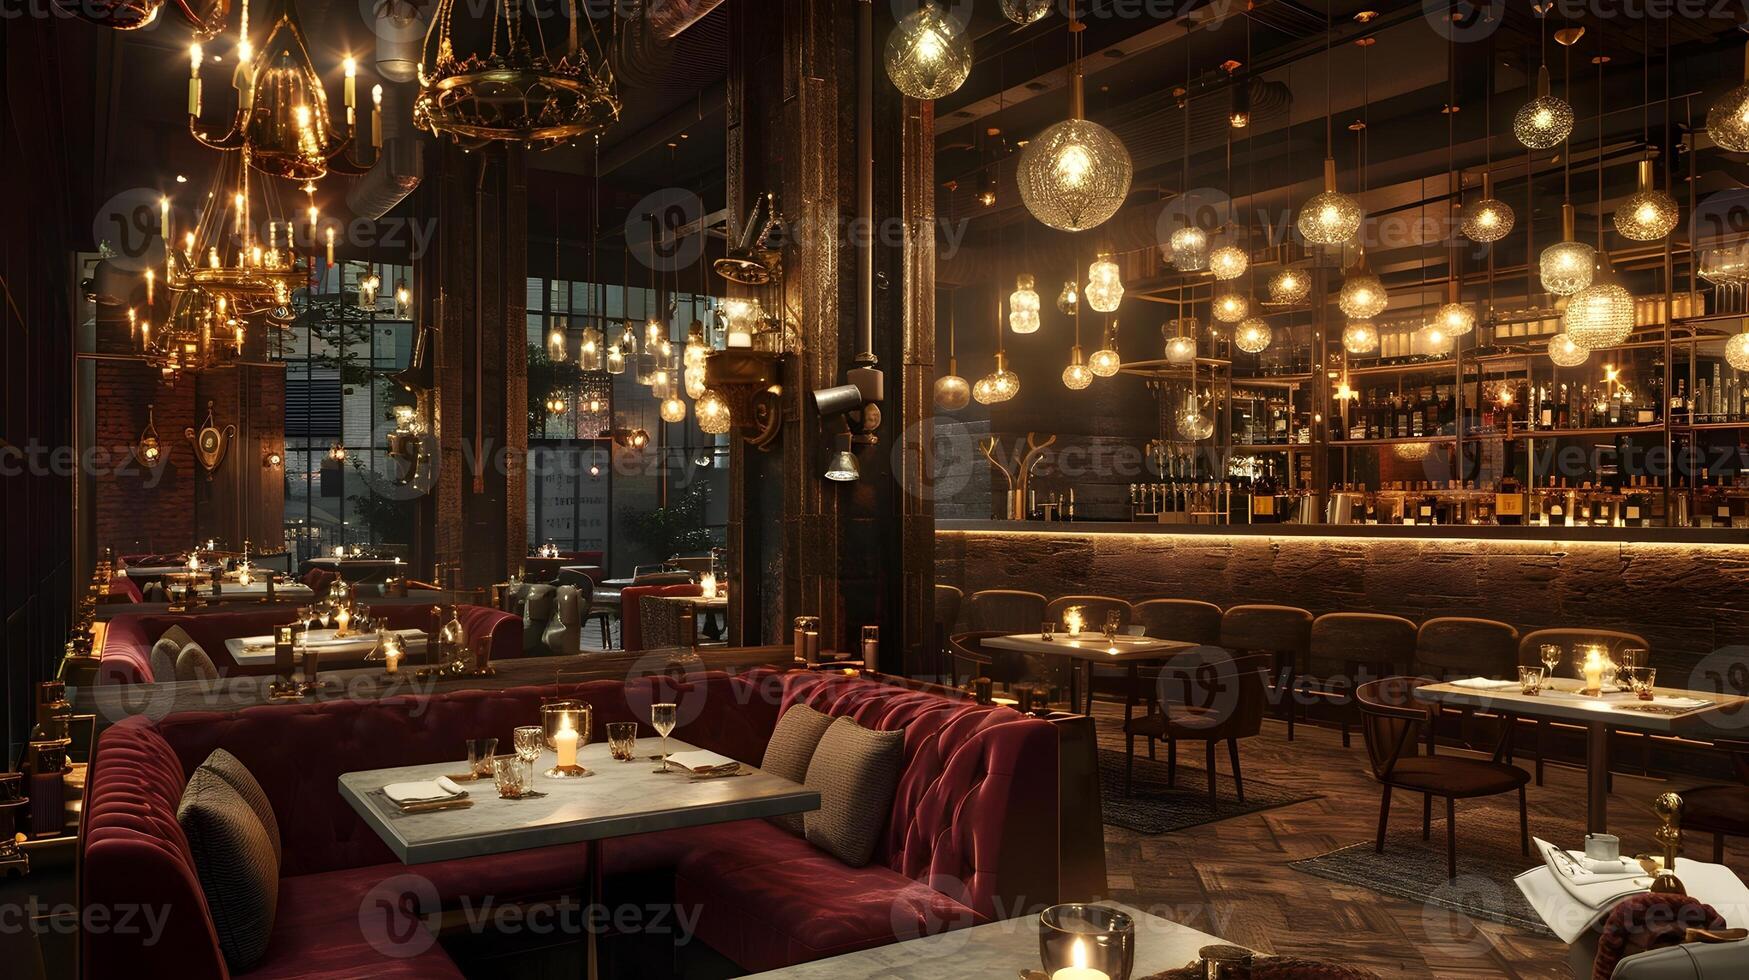 acolhedor e convidativo de luxo Barra e restaurante interior Projeto com caloroso iluminação e rústico vintage decoração foto